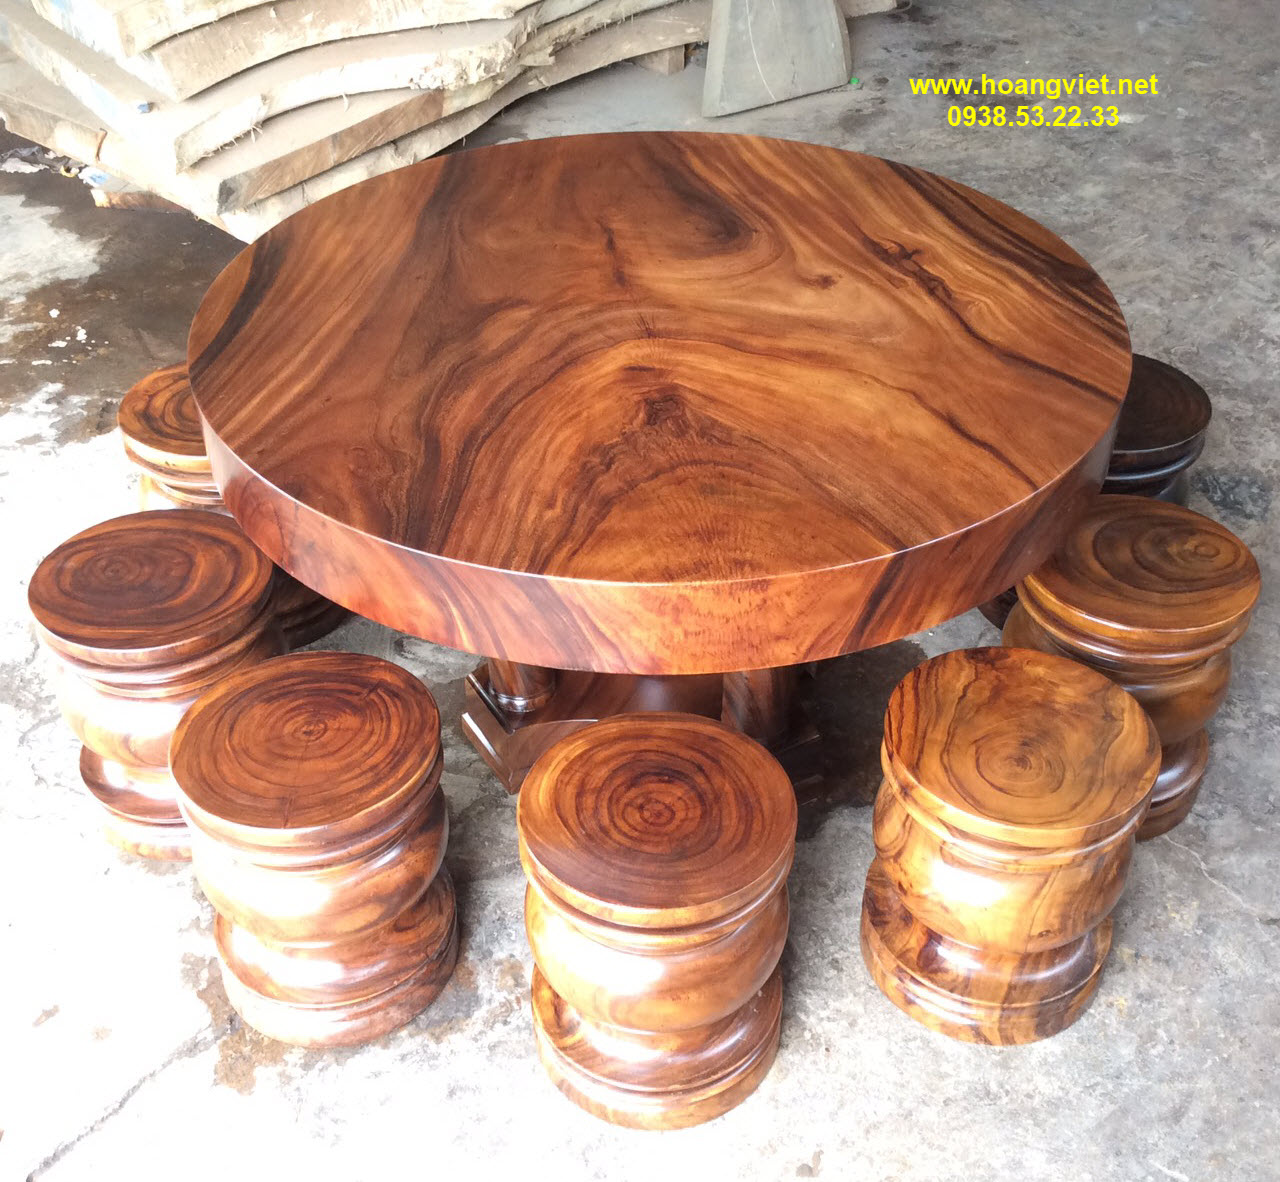 Khám phá những mẫu bàn tròn gỗ nguyên khối có vân gỗ đẹp nhất trên ...